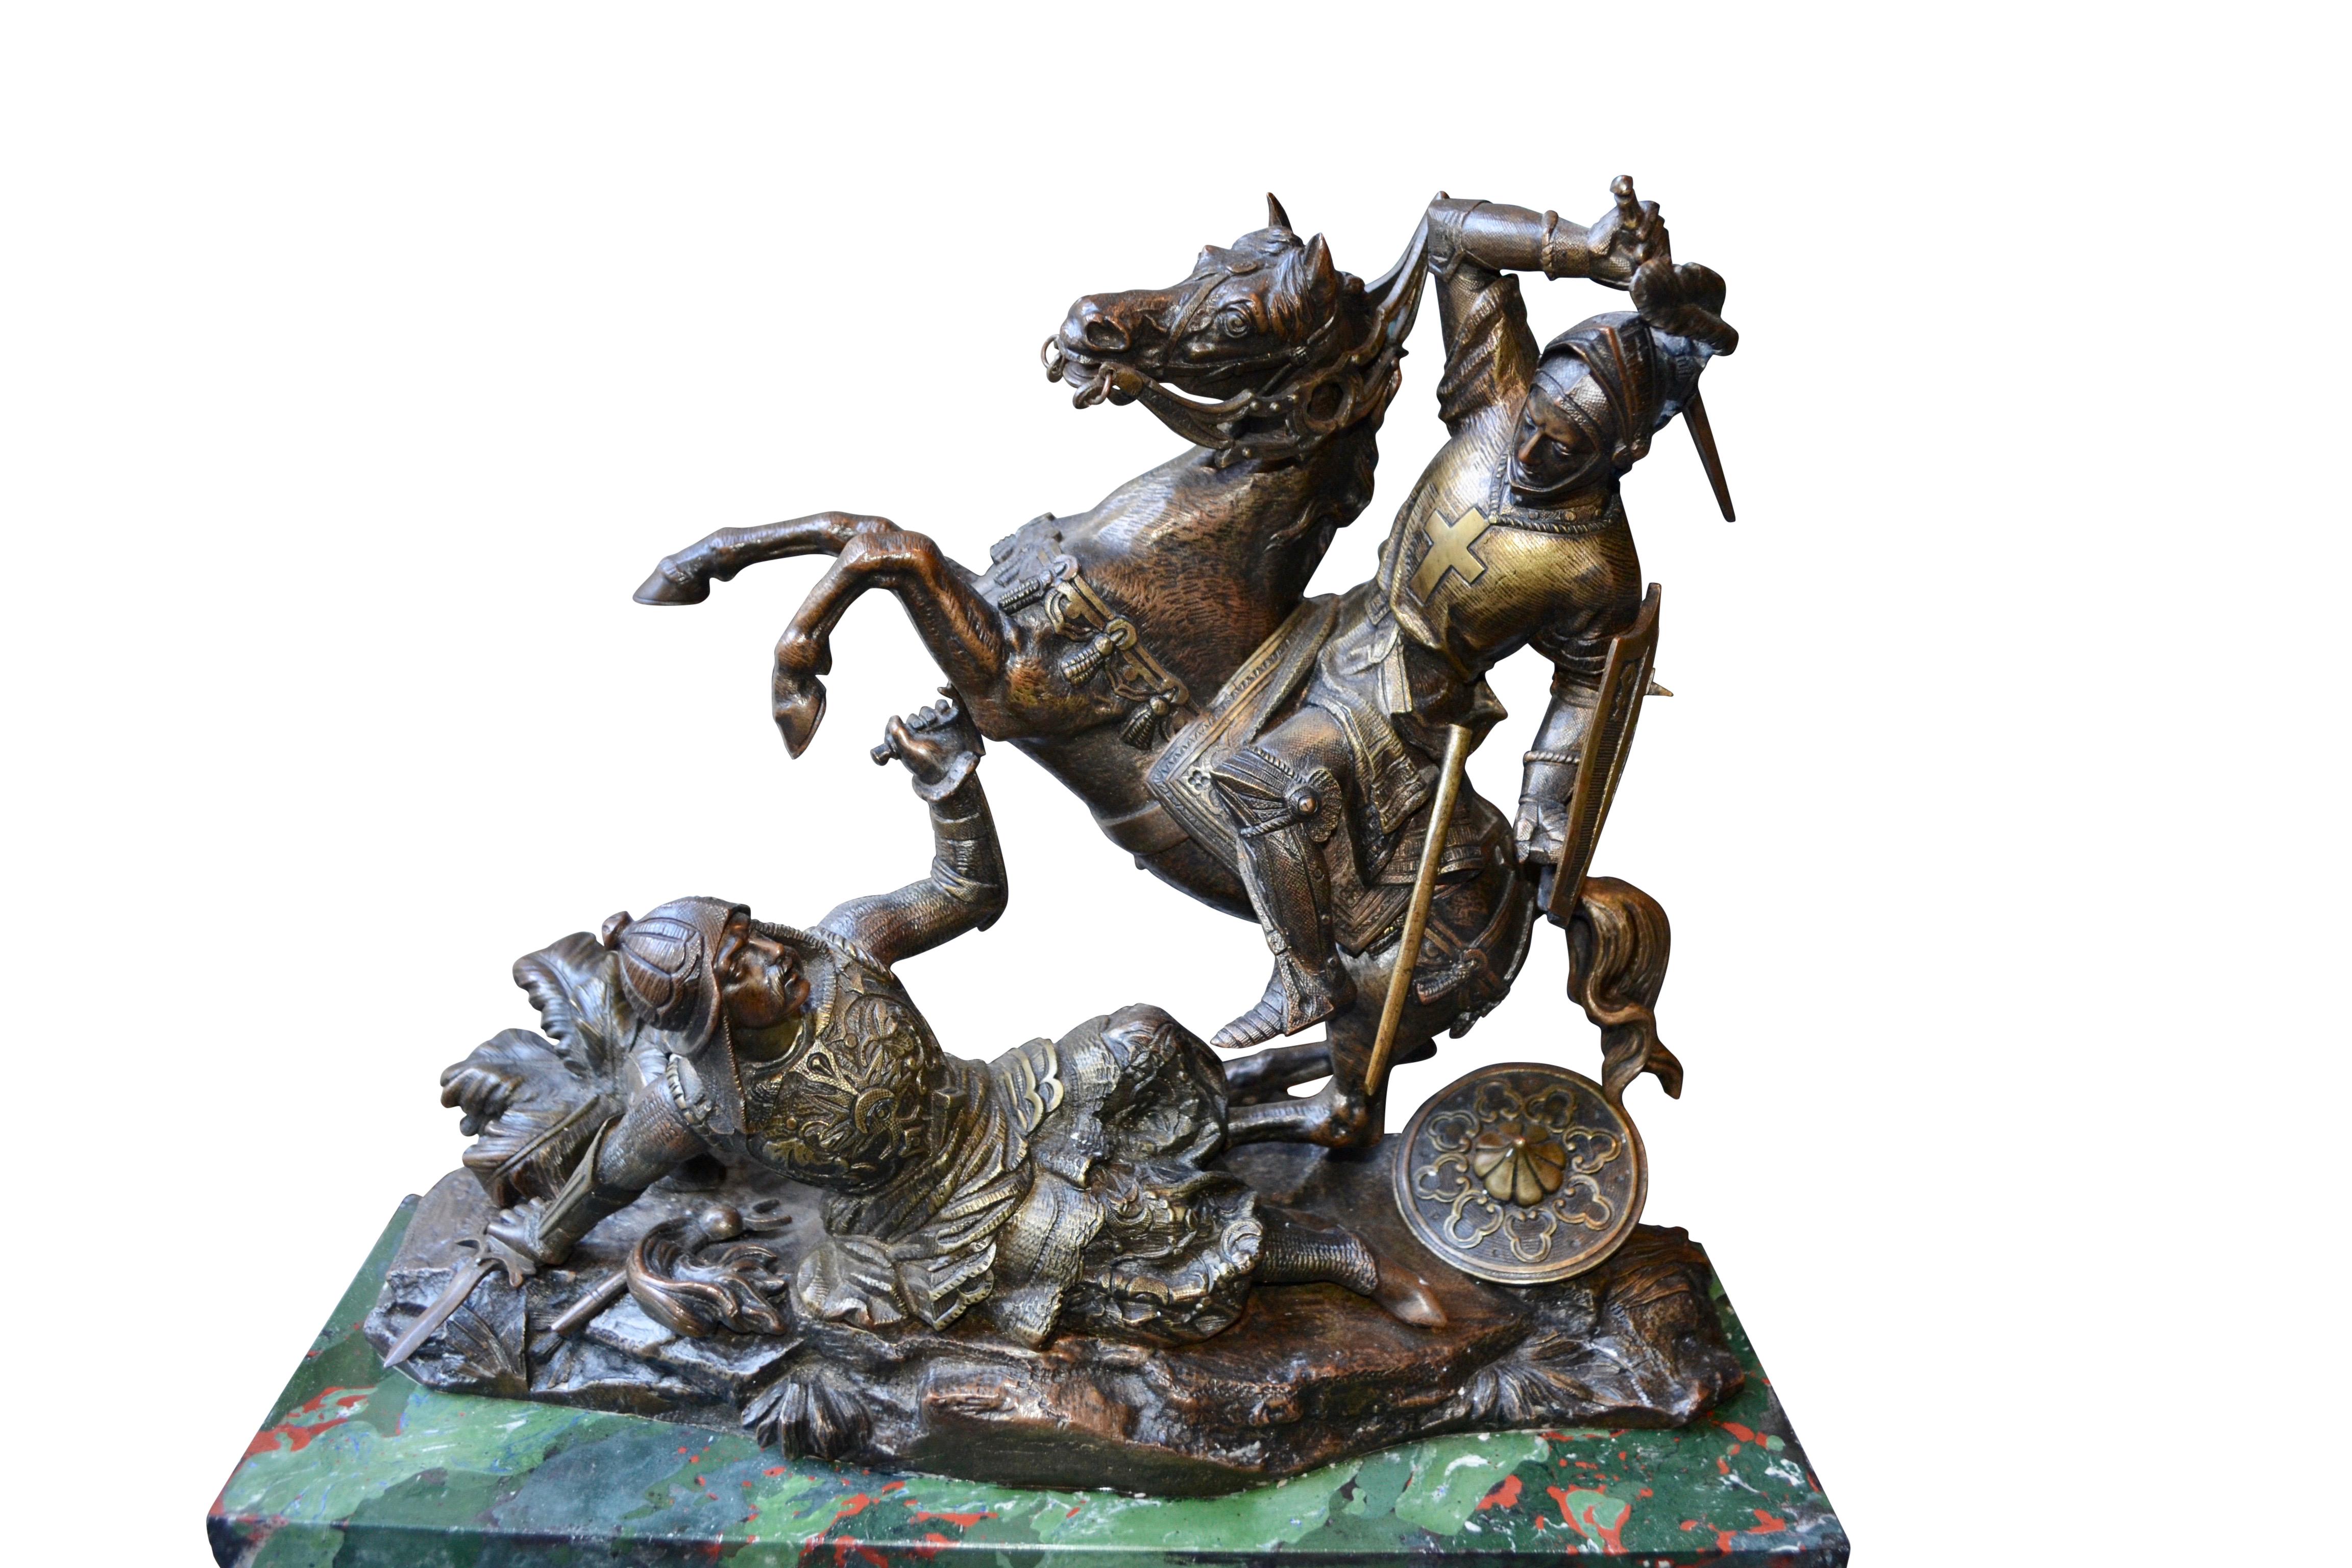 Statue spectaculaire en bronze patiné représentant un croisé monté sur son cheval cabré, prêt à porter un coup mortel à un Sarrasin tombé sous lui dans un paysage rocheux. Dans une tentative désespérée de se défendre, le Sarrasin enfonce son épée